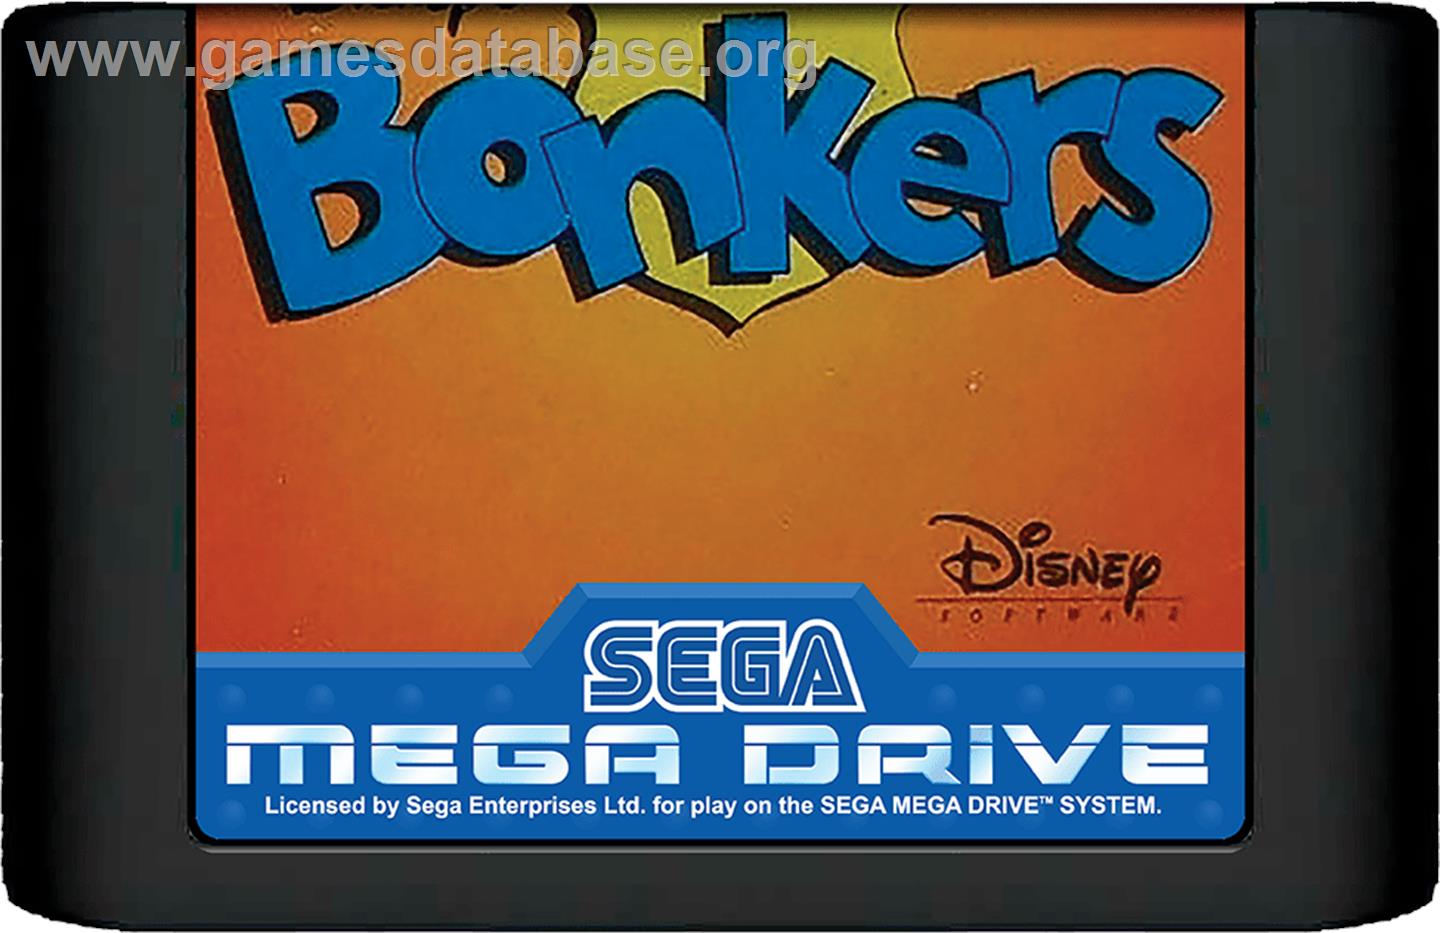 Bonkers - Sega Genesis - Artwork - Cartridge